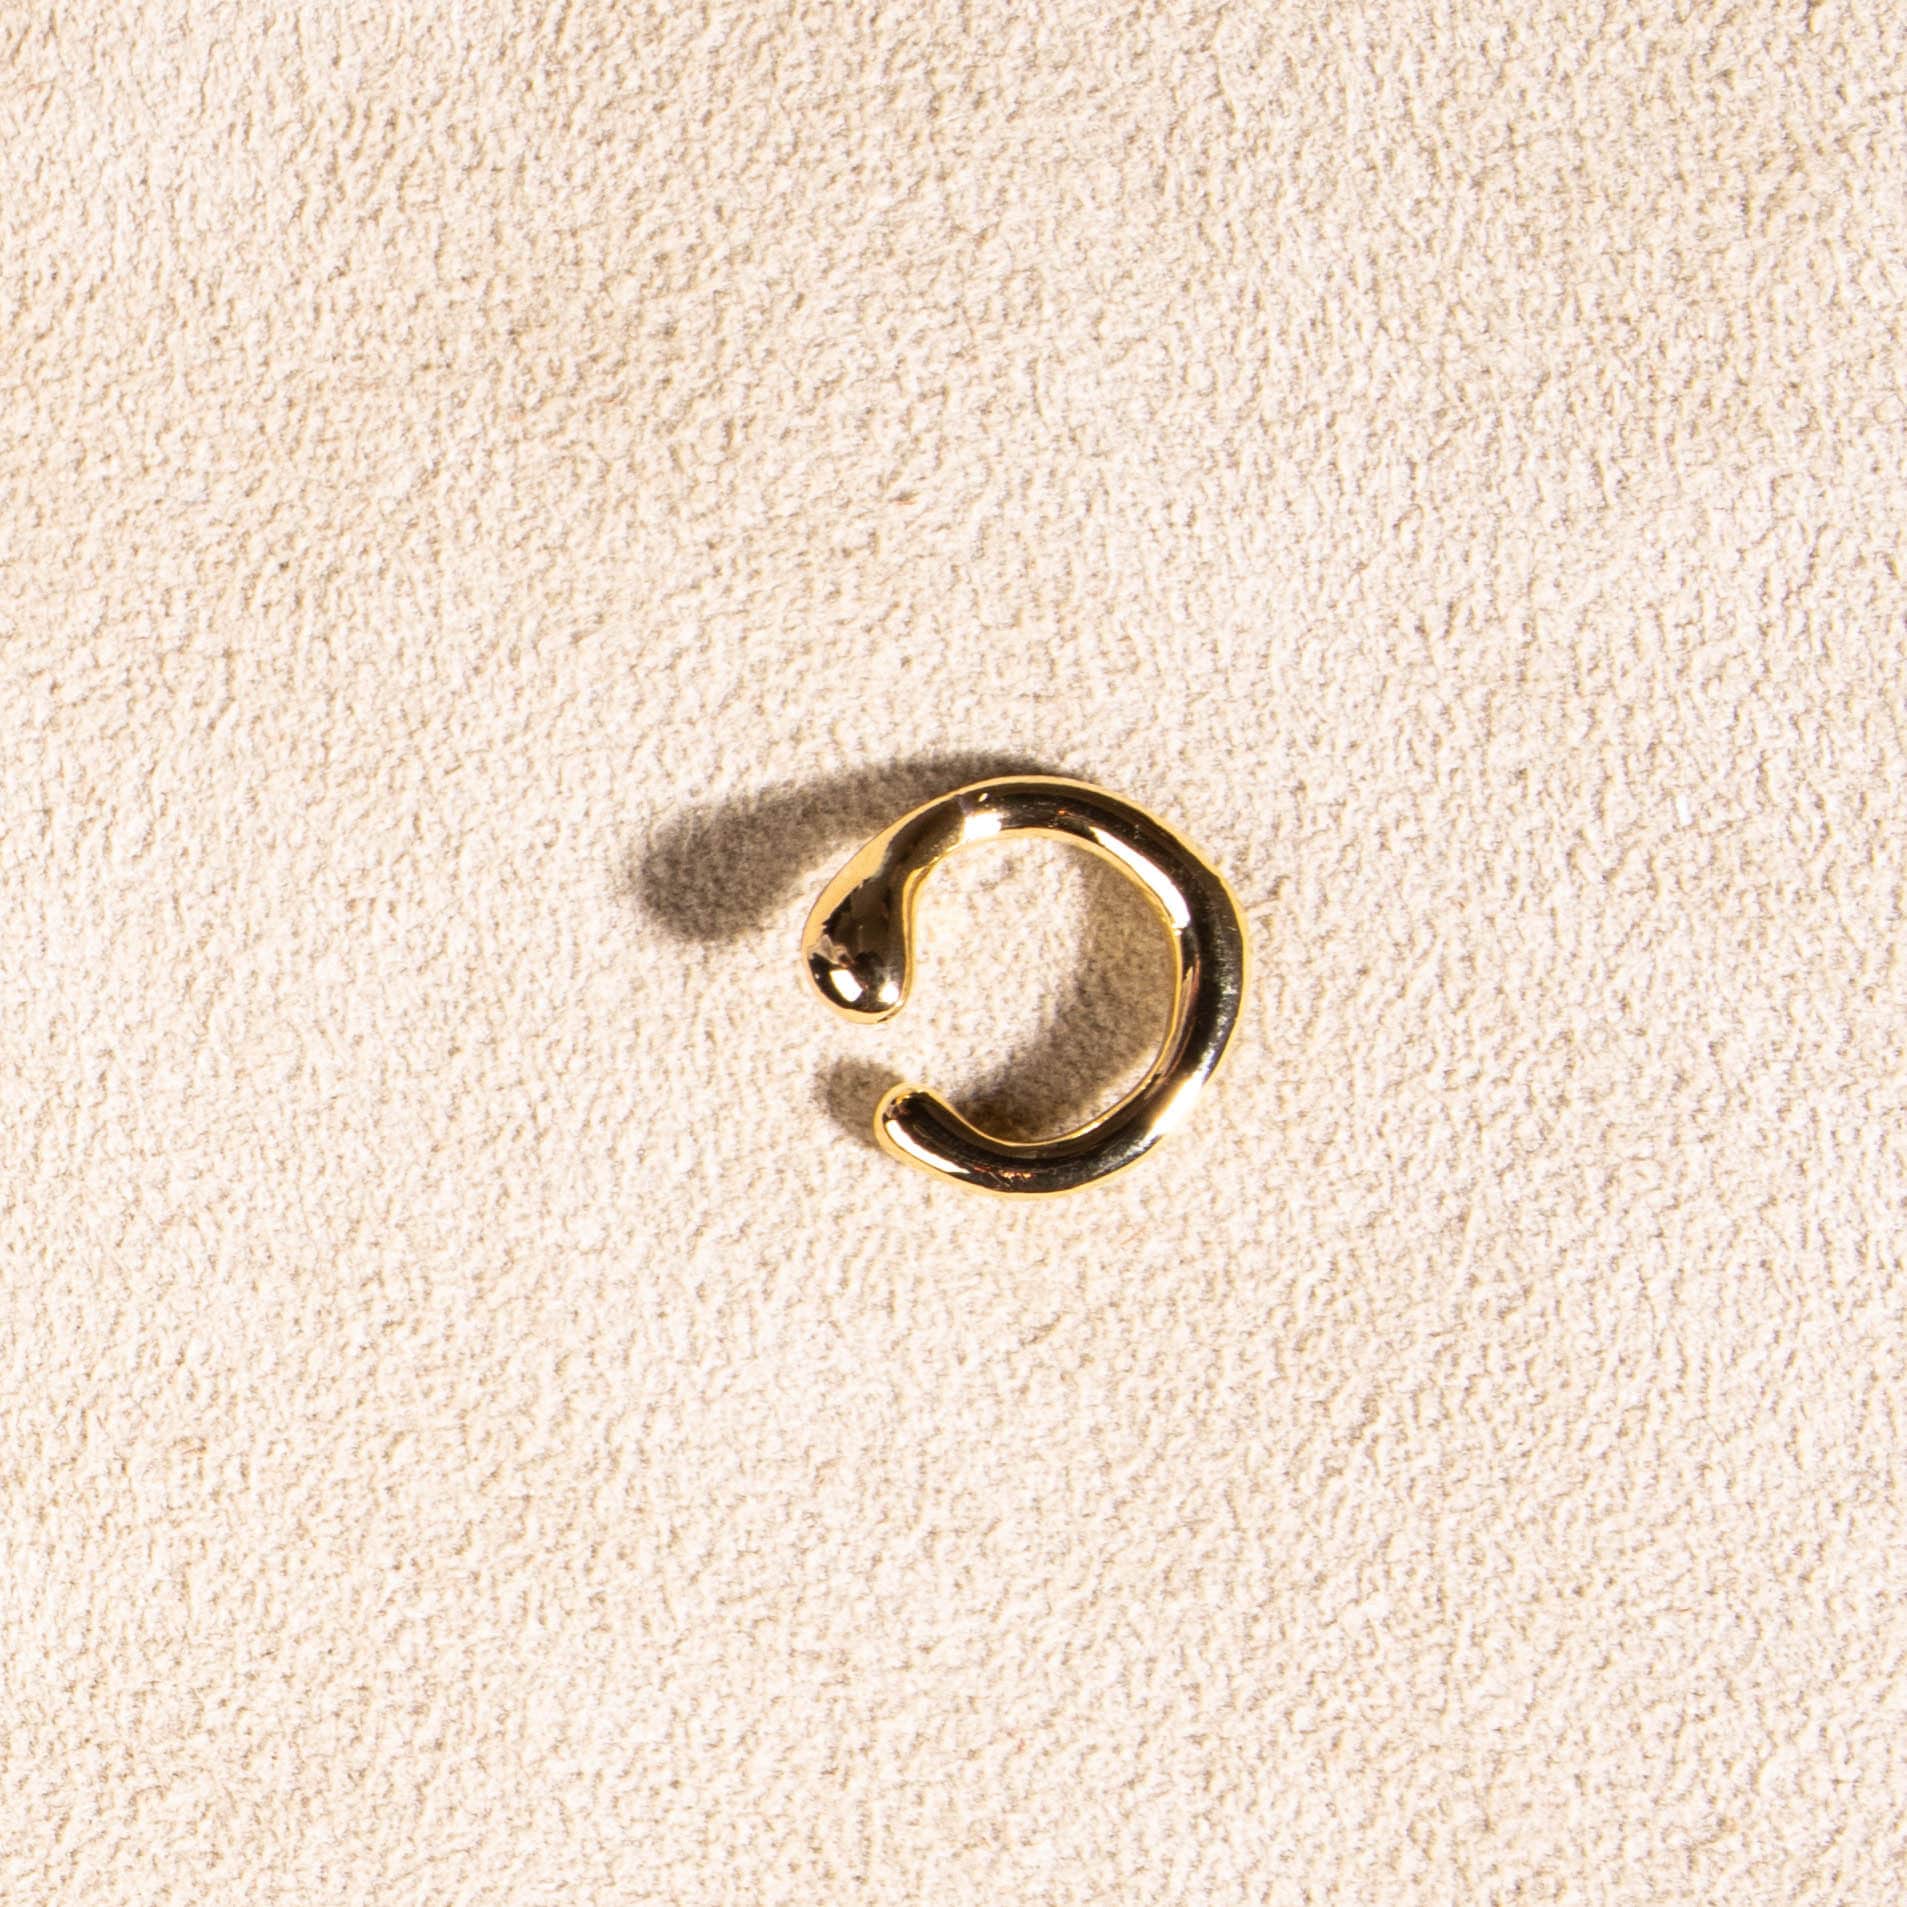 Ear cuff Manschette vergoldet unregelmäßig Gold 18k - NooeBerlin